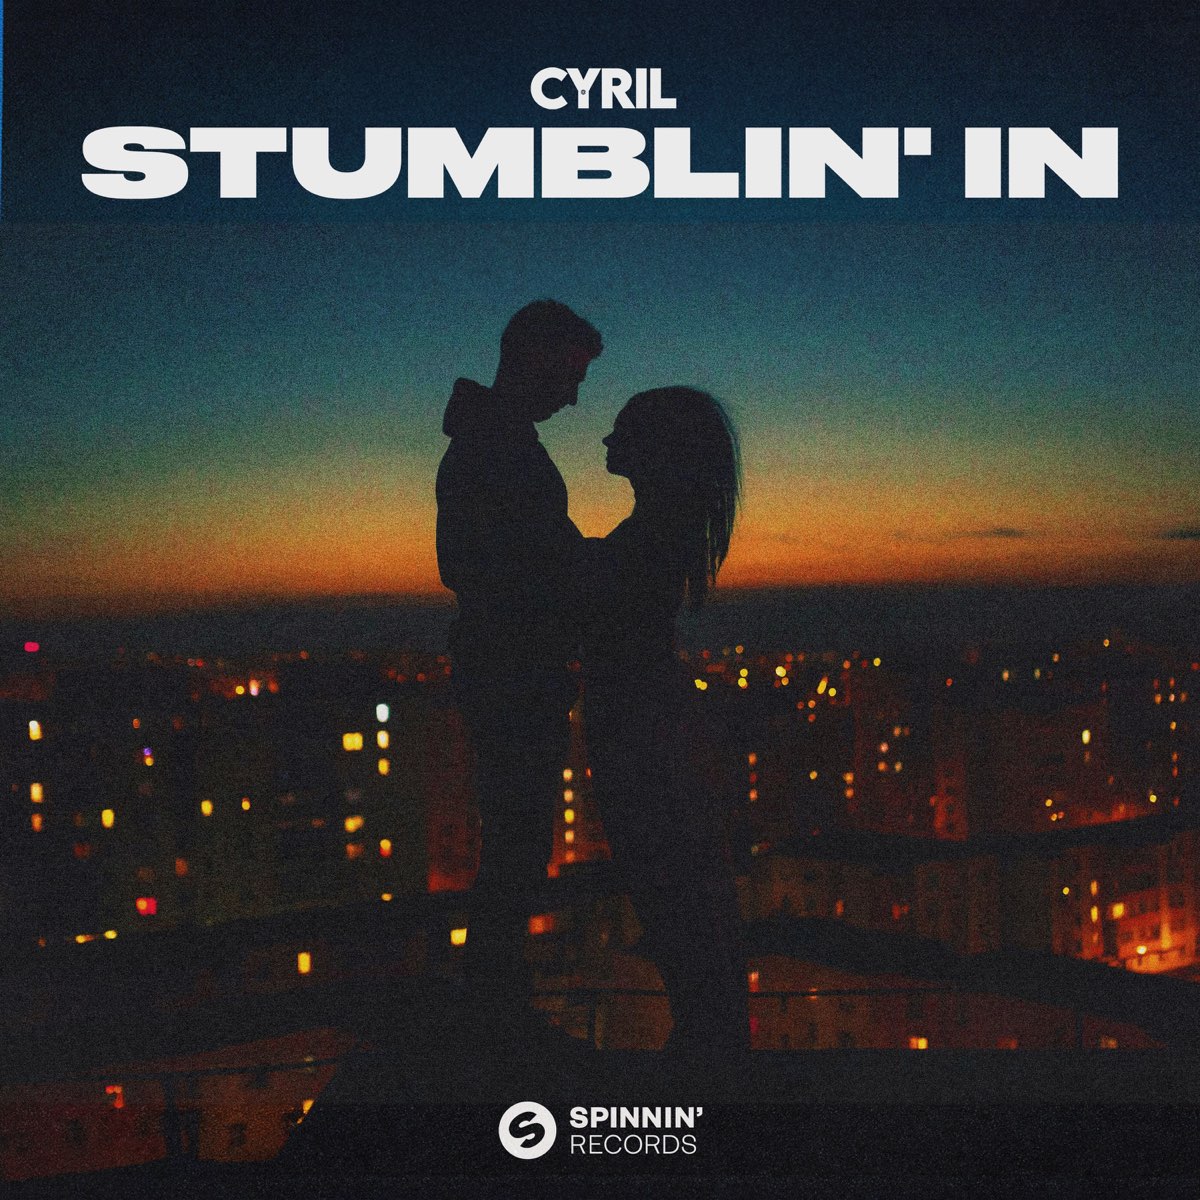 CYRIL - Stumblin' In - Testo e Traduzione